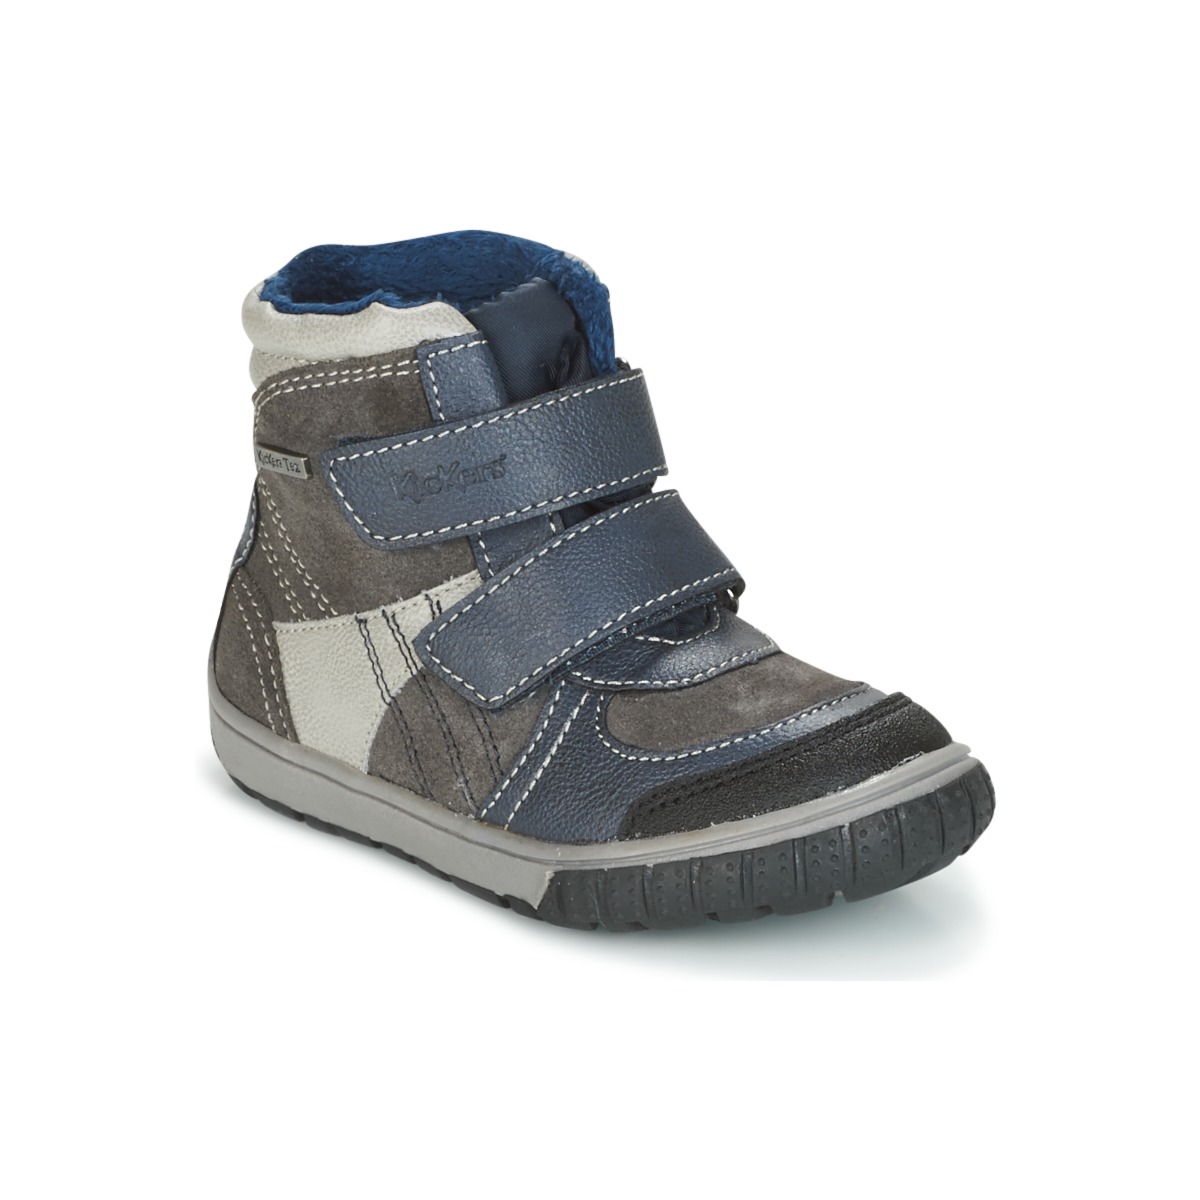 Sapatos Rapaz Botas de neve Kickers SITROUILLE Cinza / Escuro / Azul